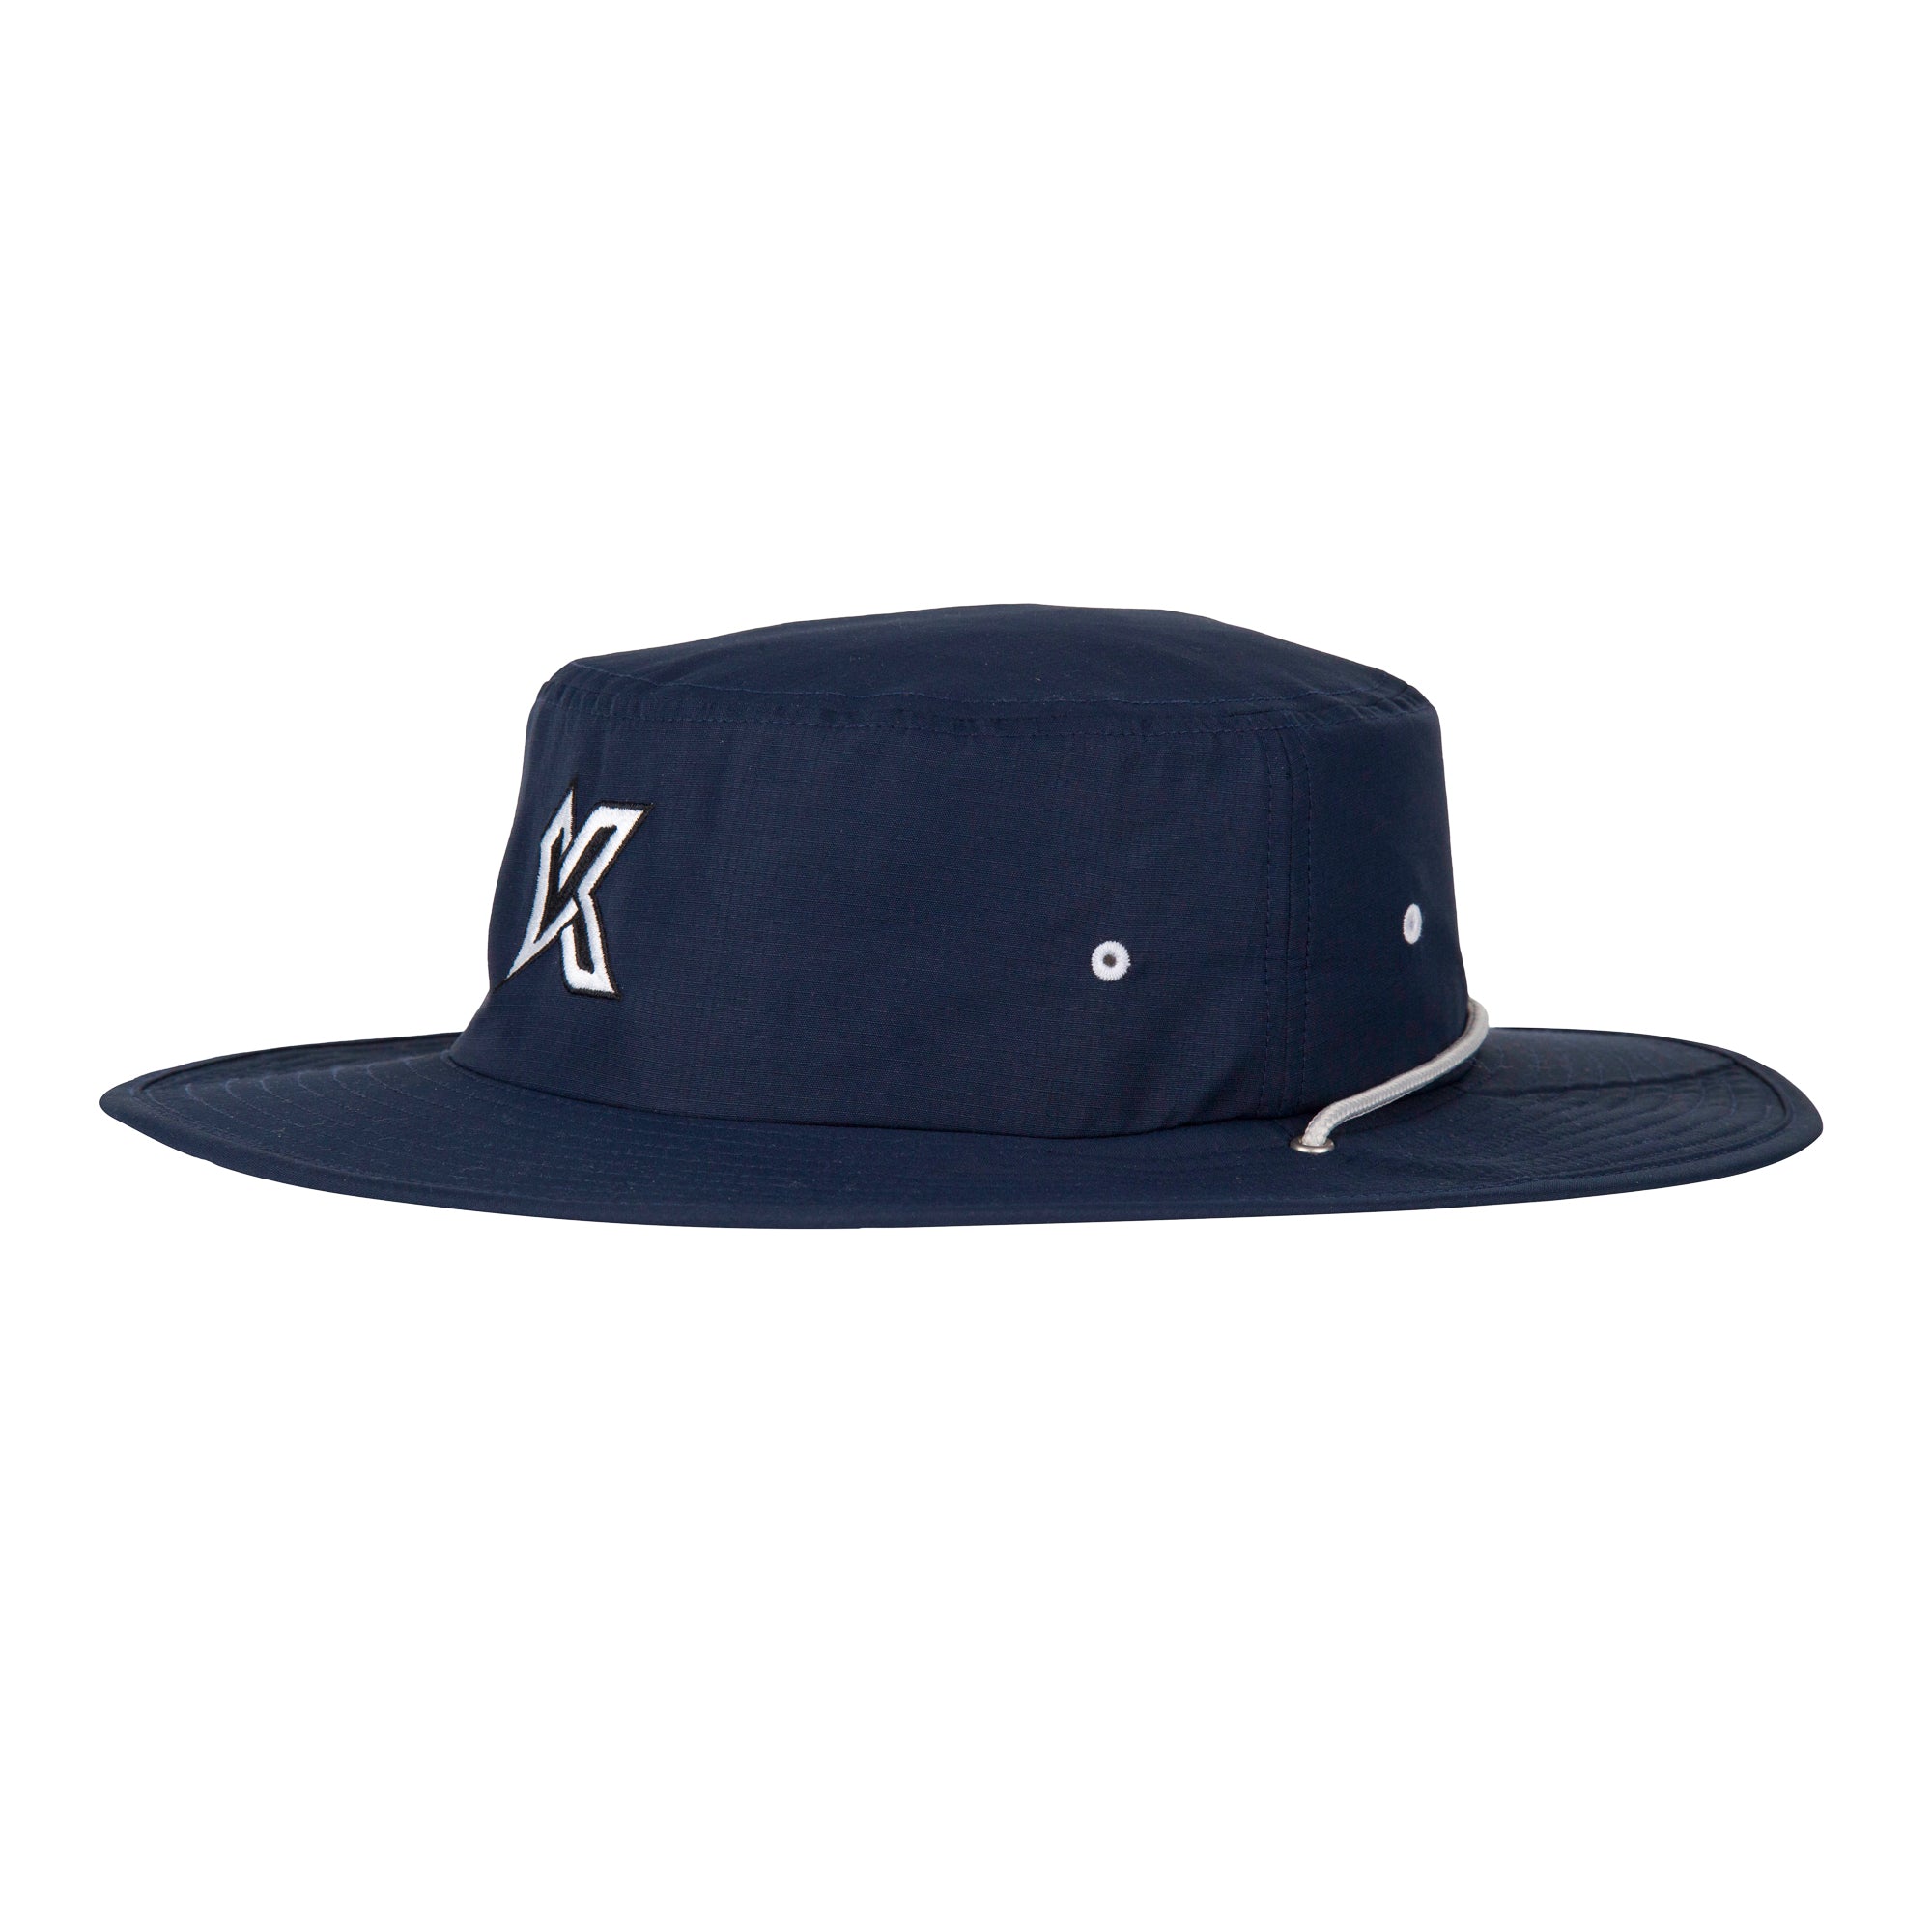 K Icon Boonie Sun Hat - Navy - Kecks